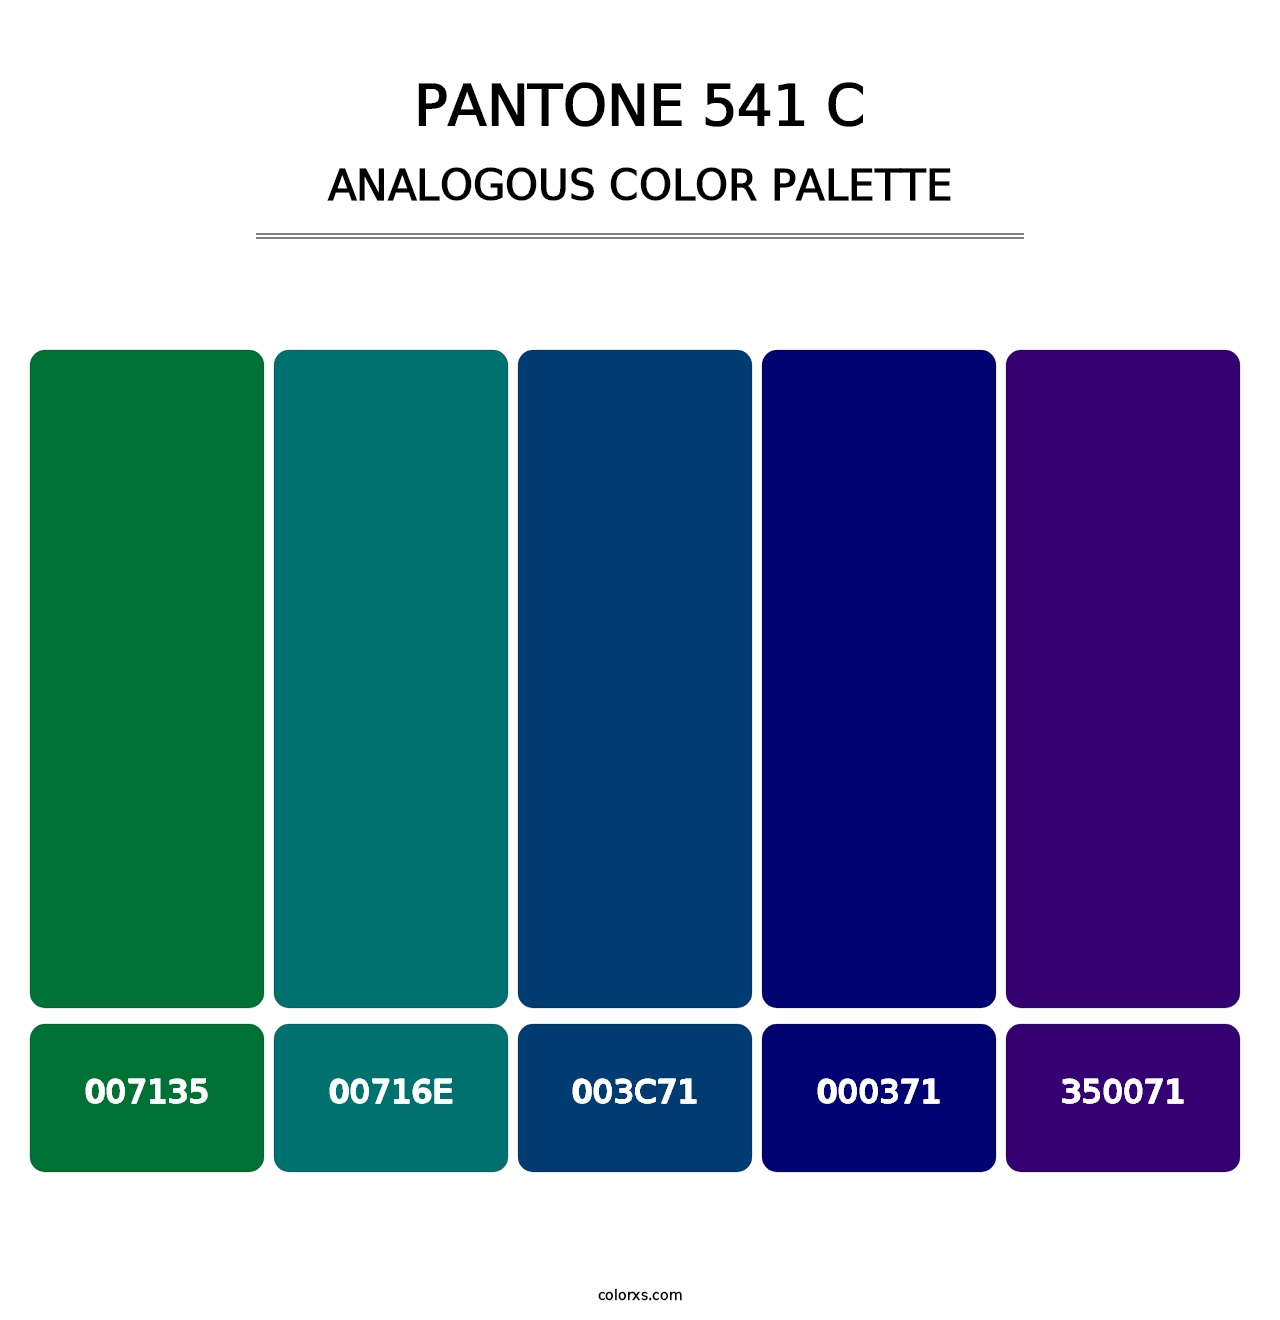 PANTONE 541 C - Analogous Color Palette